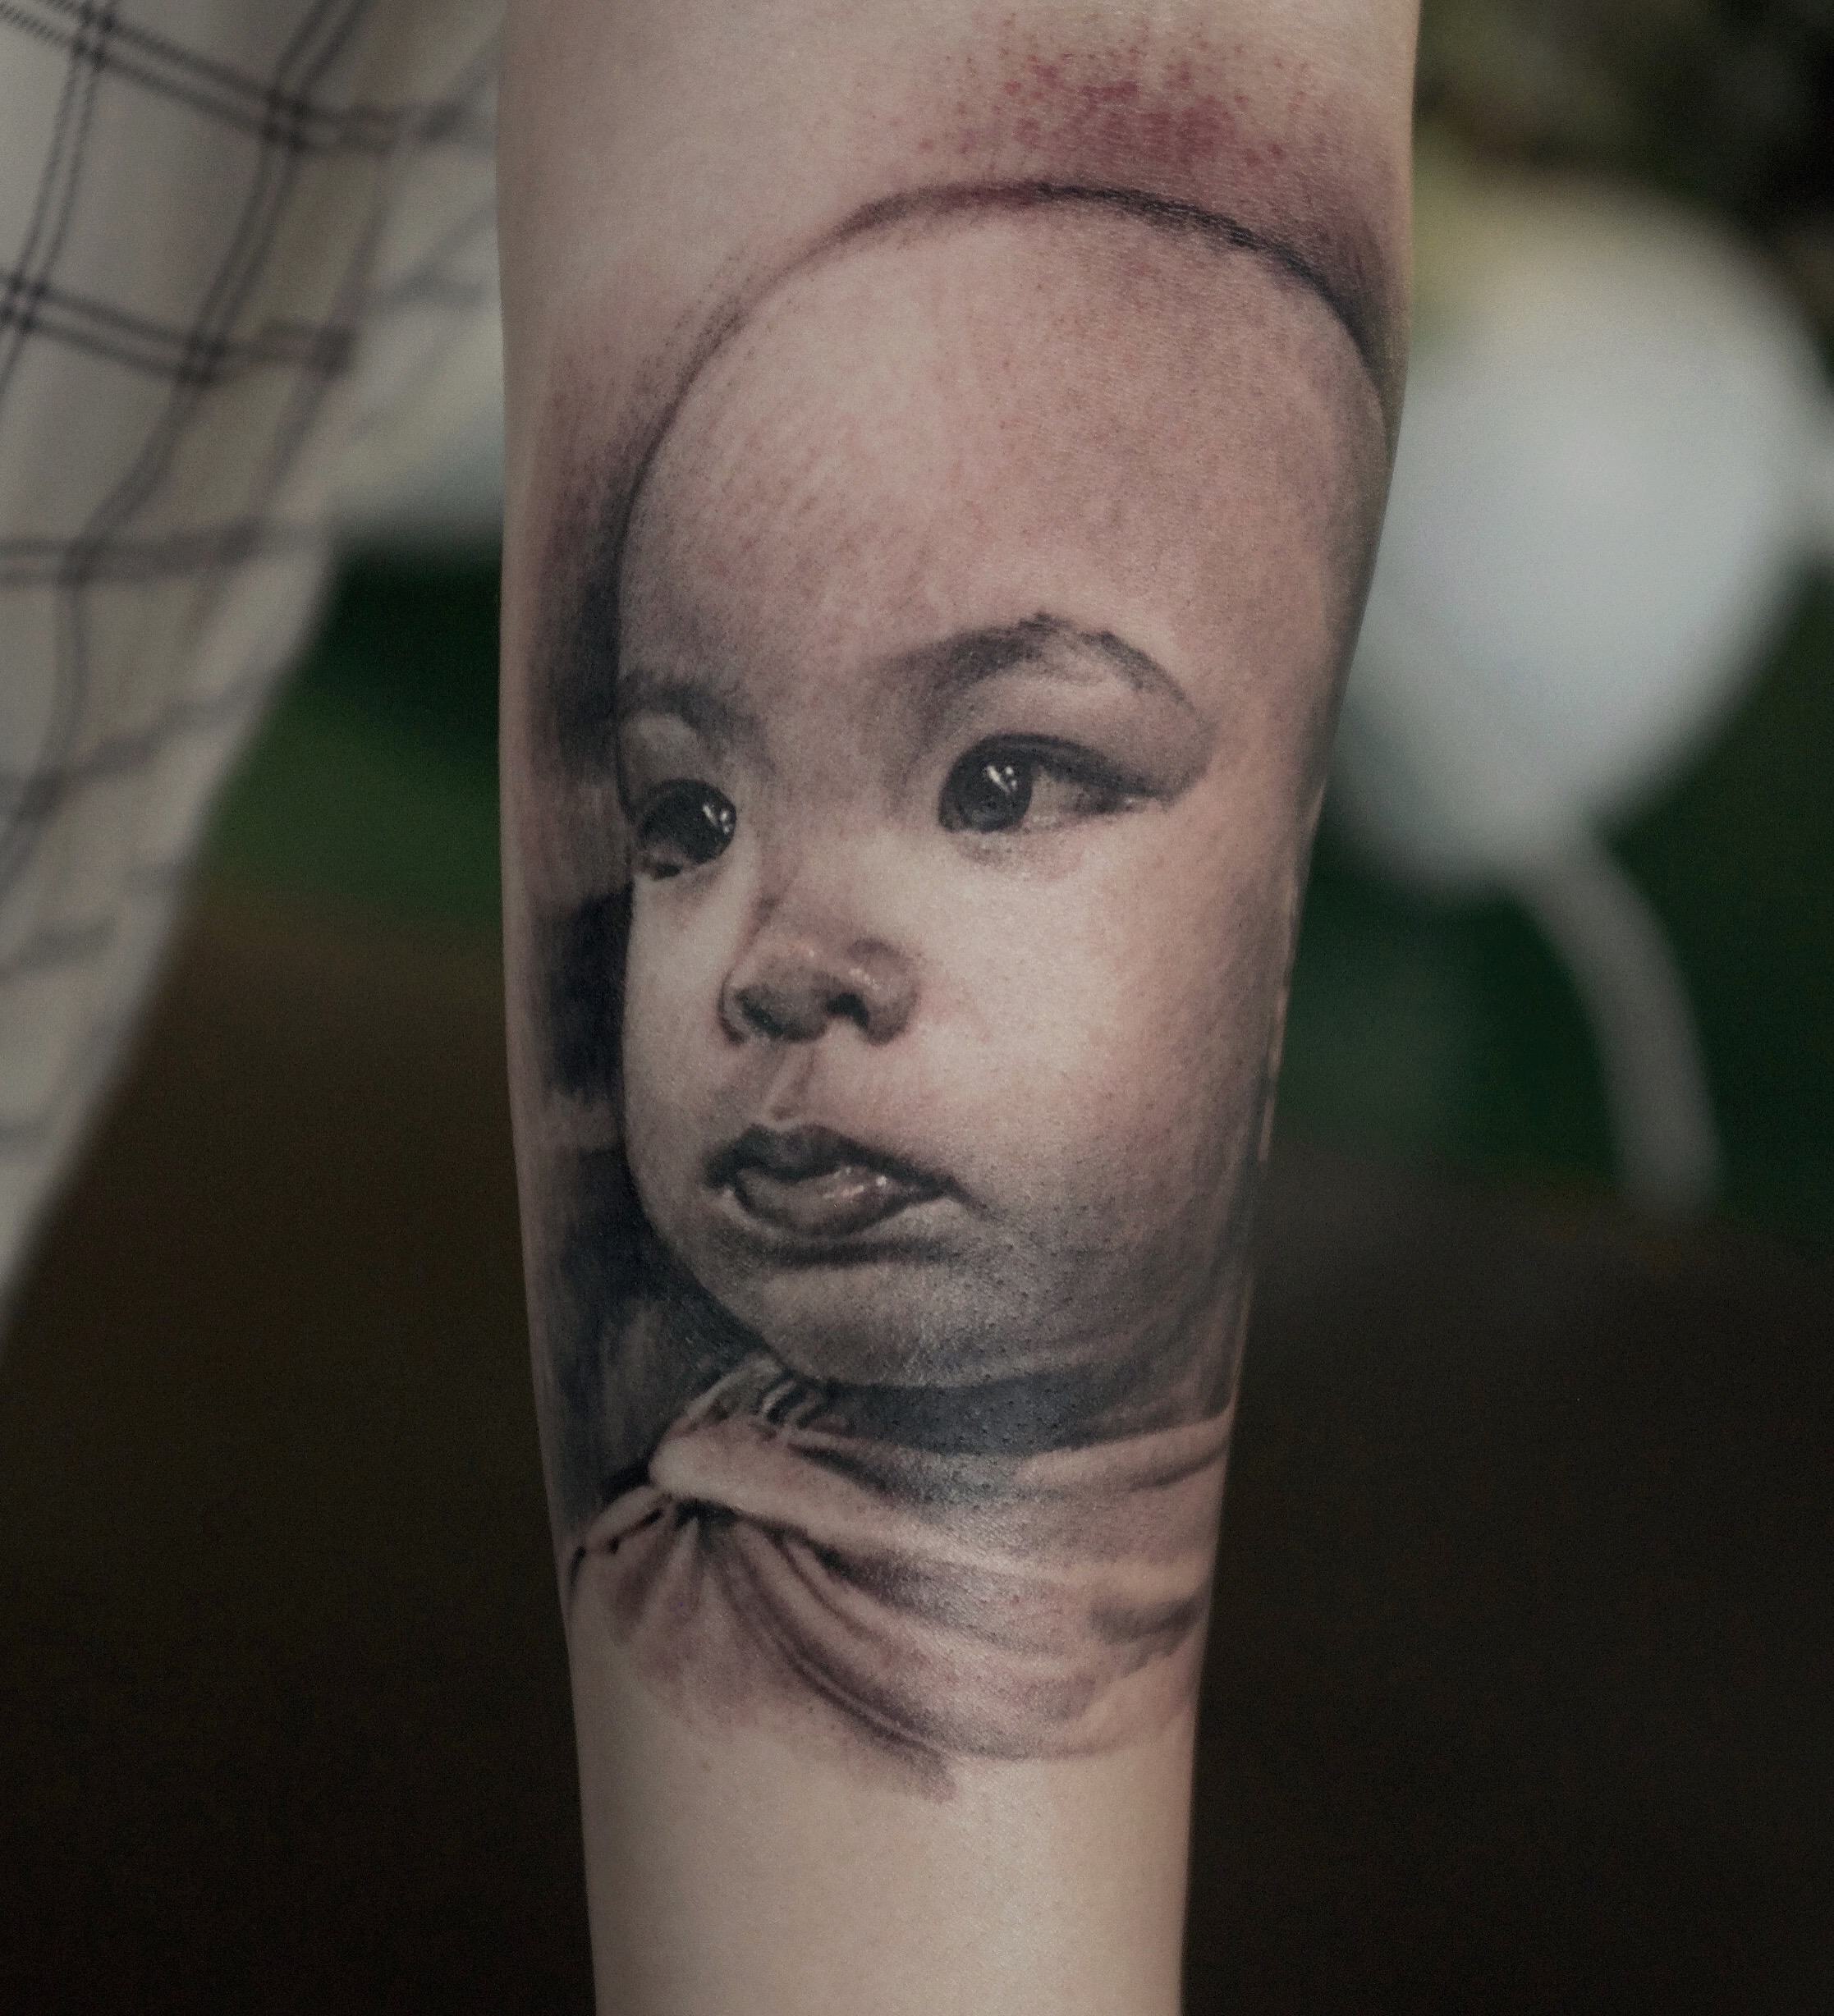 zhuo dan ting tattoo work kid portrait tattoo卓丹婷纹身作品 孩子肖像写实 1